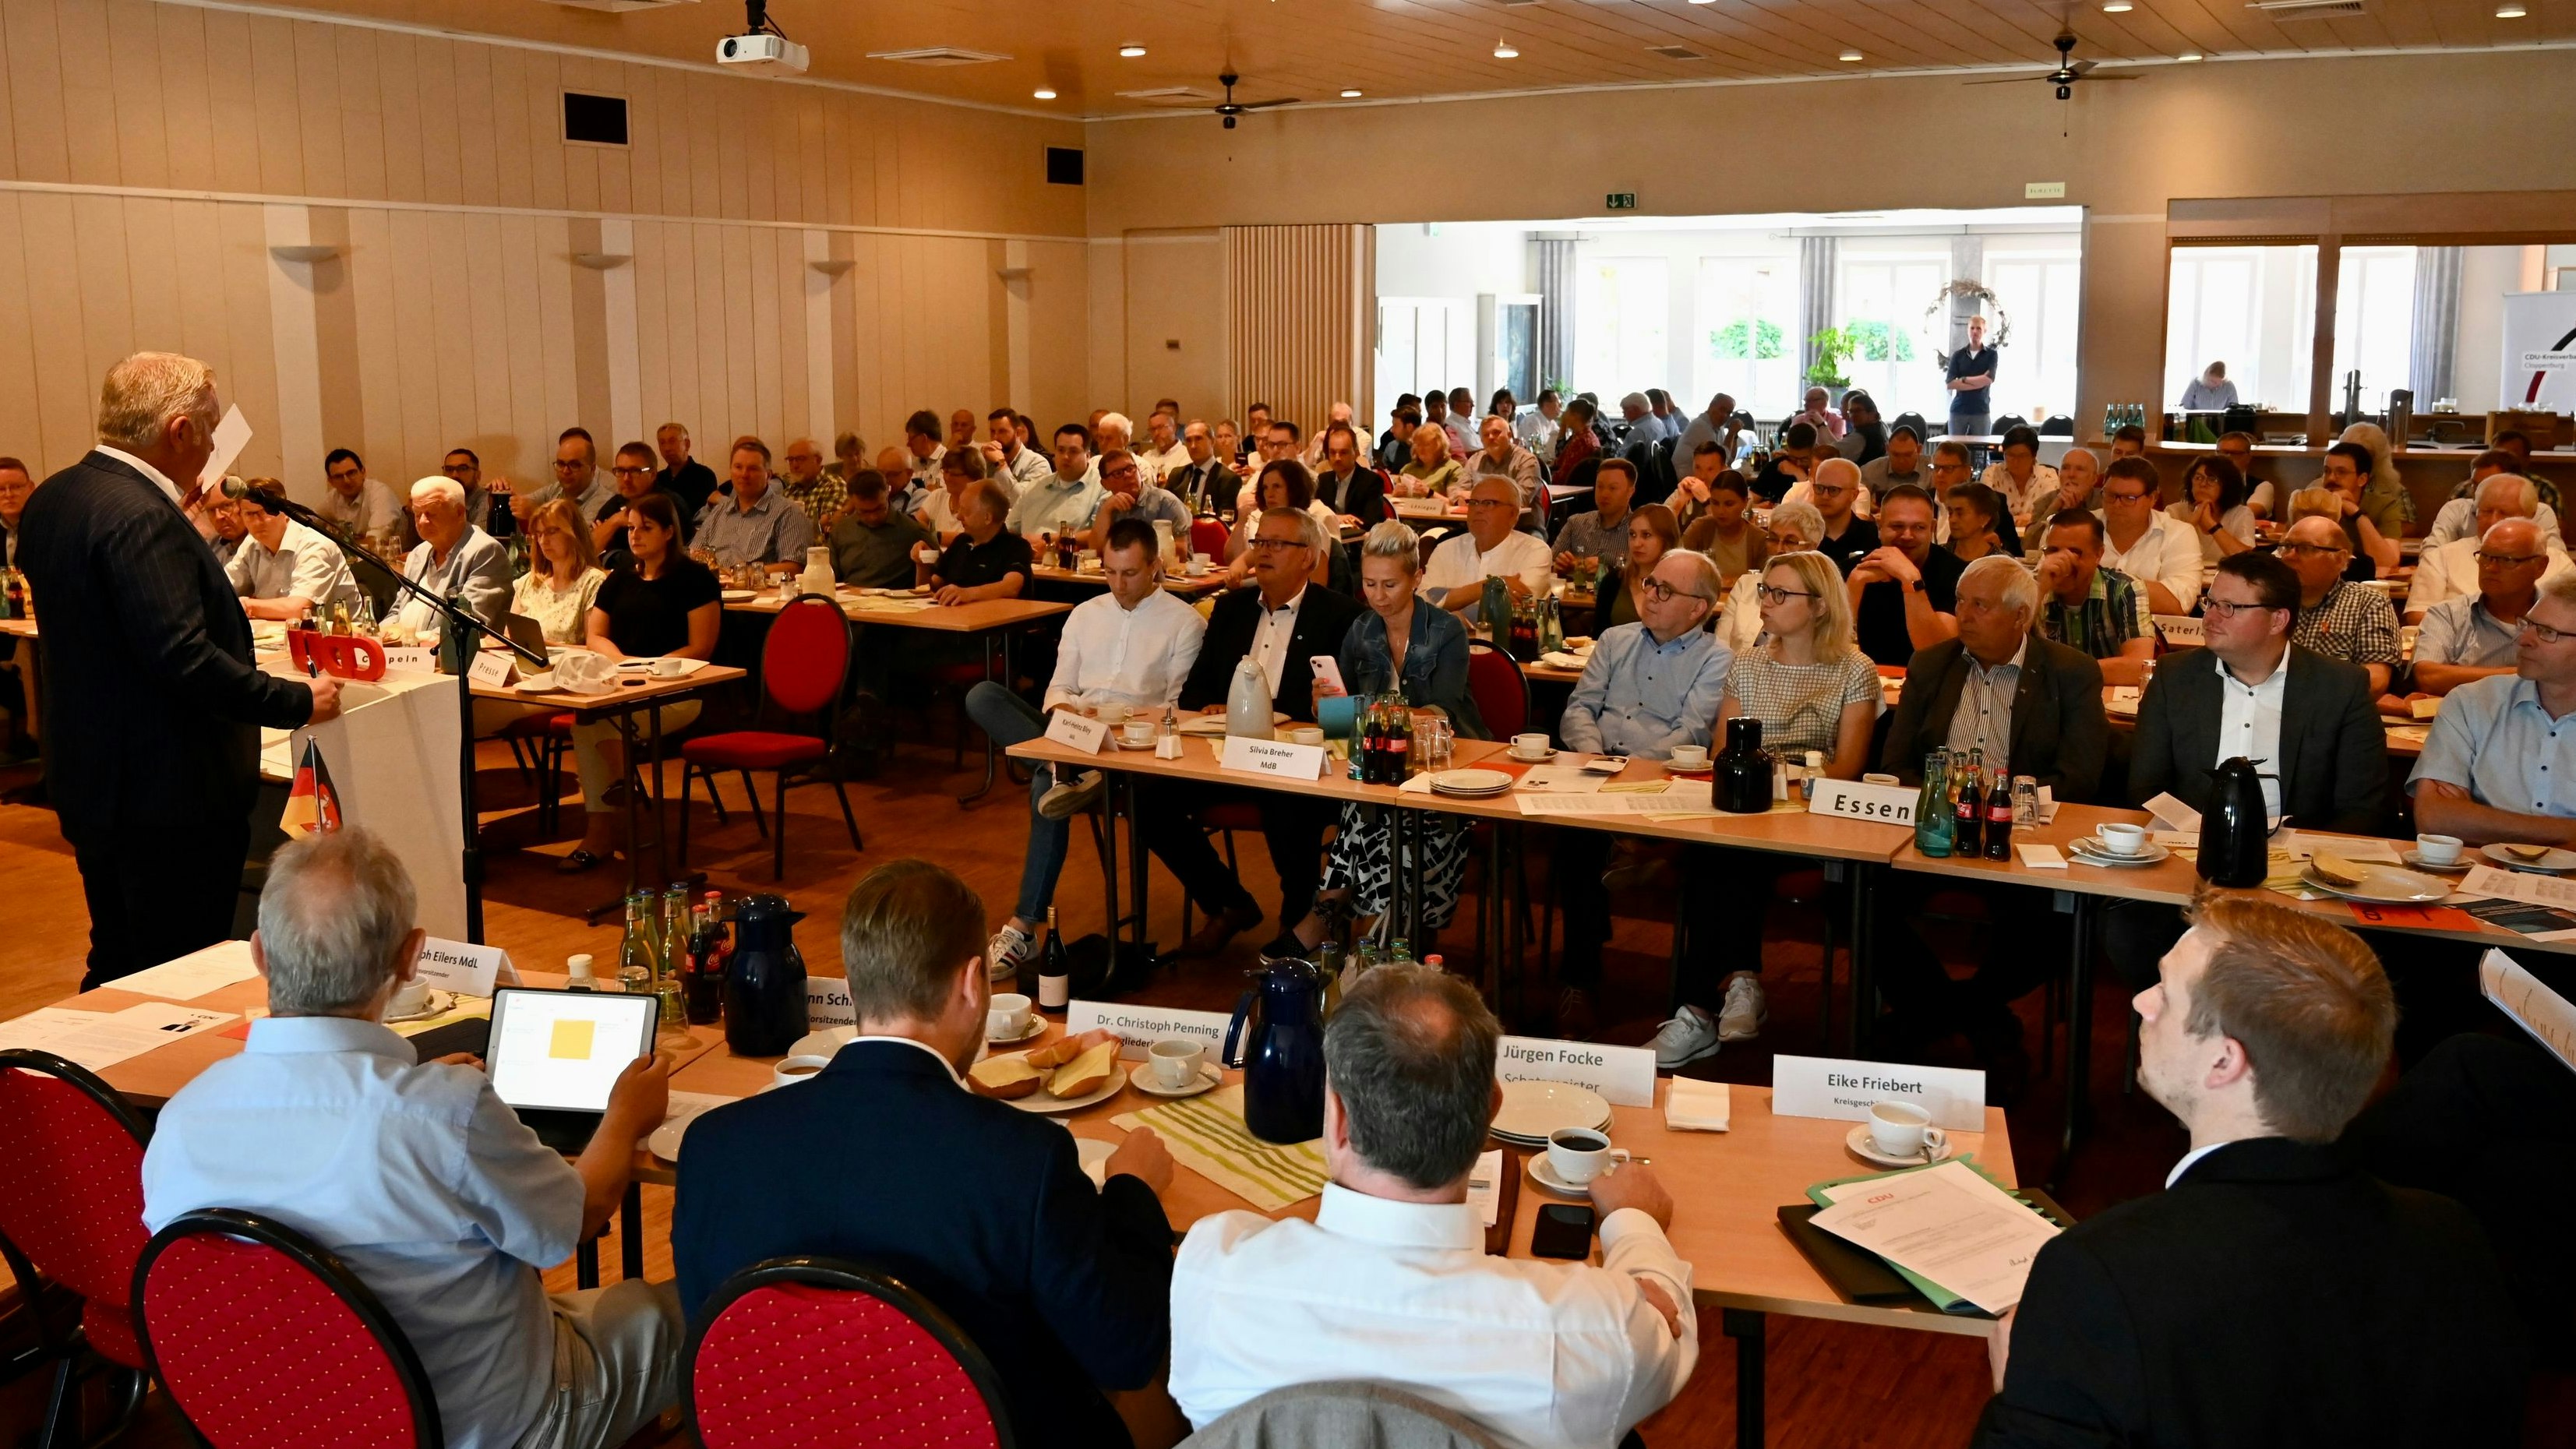 CDU-Kreisparteitag: Die Delegierten aus dem Kreis Cloppenburg haben sich in Essen getroffen. Foto: Hermes